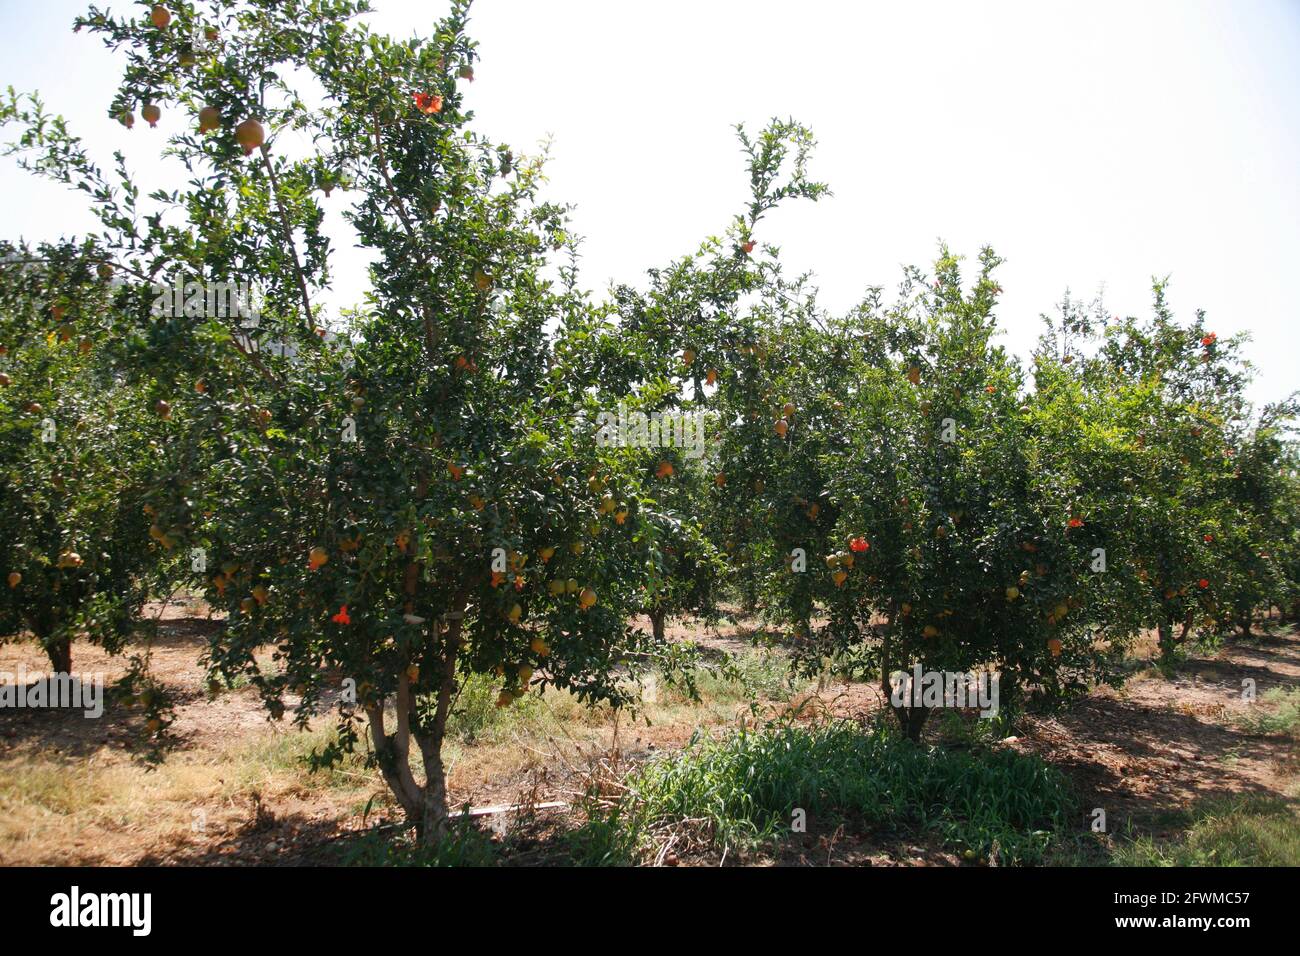 Obstgarten mit Granatapfelbäumen mit reifen Früchten auf ihnen in den Shephelah Hills, Lowlands oder judäischen Ausläufern in der Nähe von Sha'ar Hagai und Latrun. Israel. Stockfoto